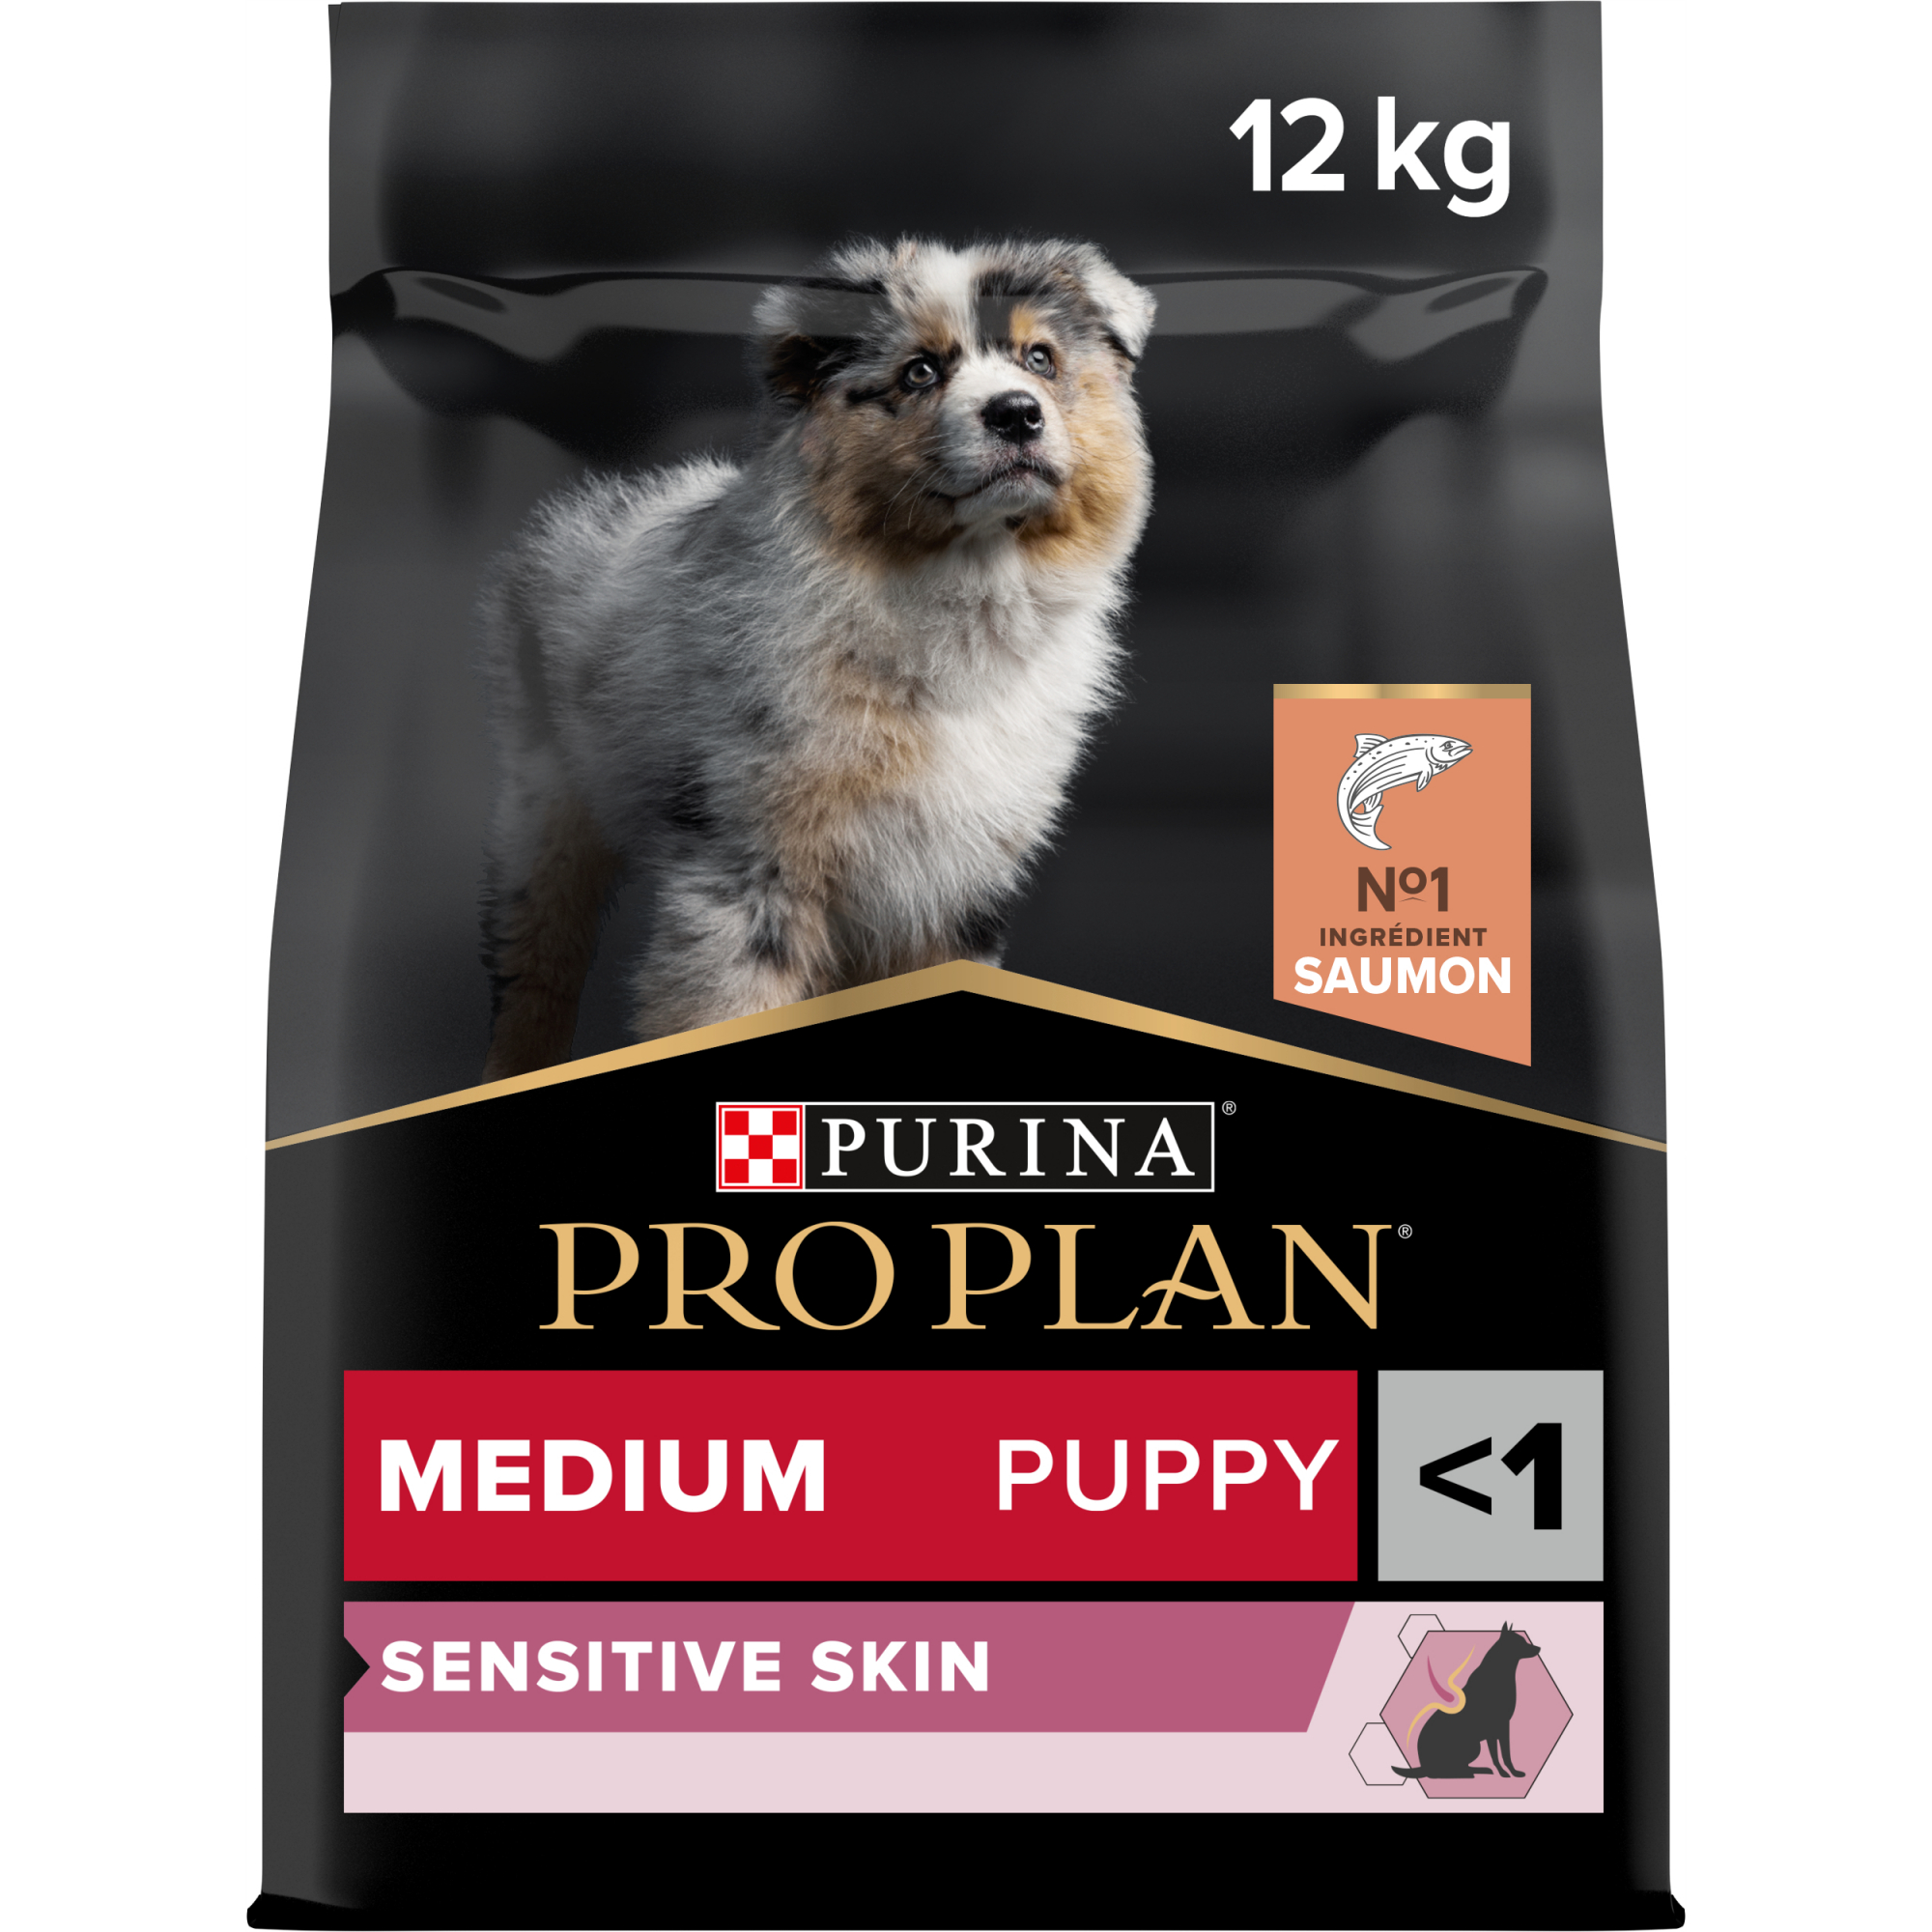 PRO PLAN Medium Puppy Sensitive Skin Ração seca sem cereais para cachorros com salmão